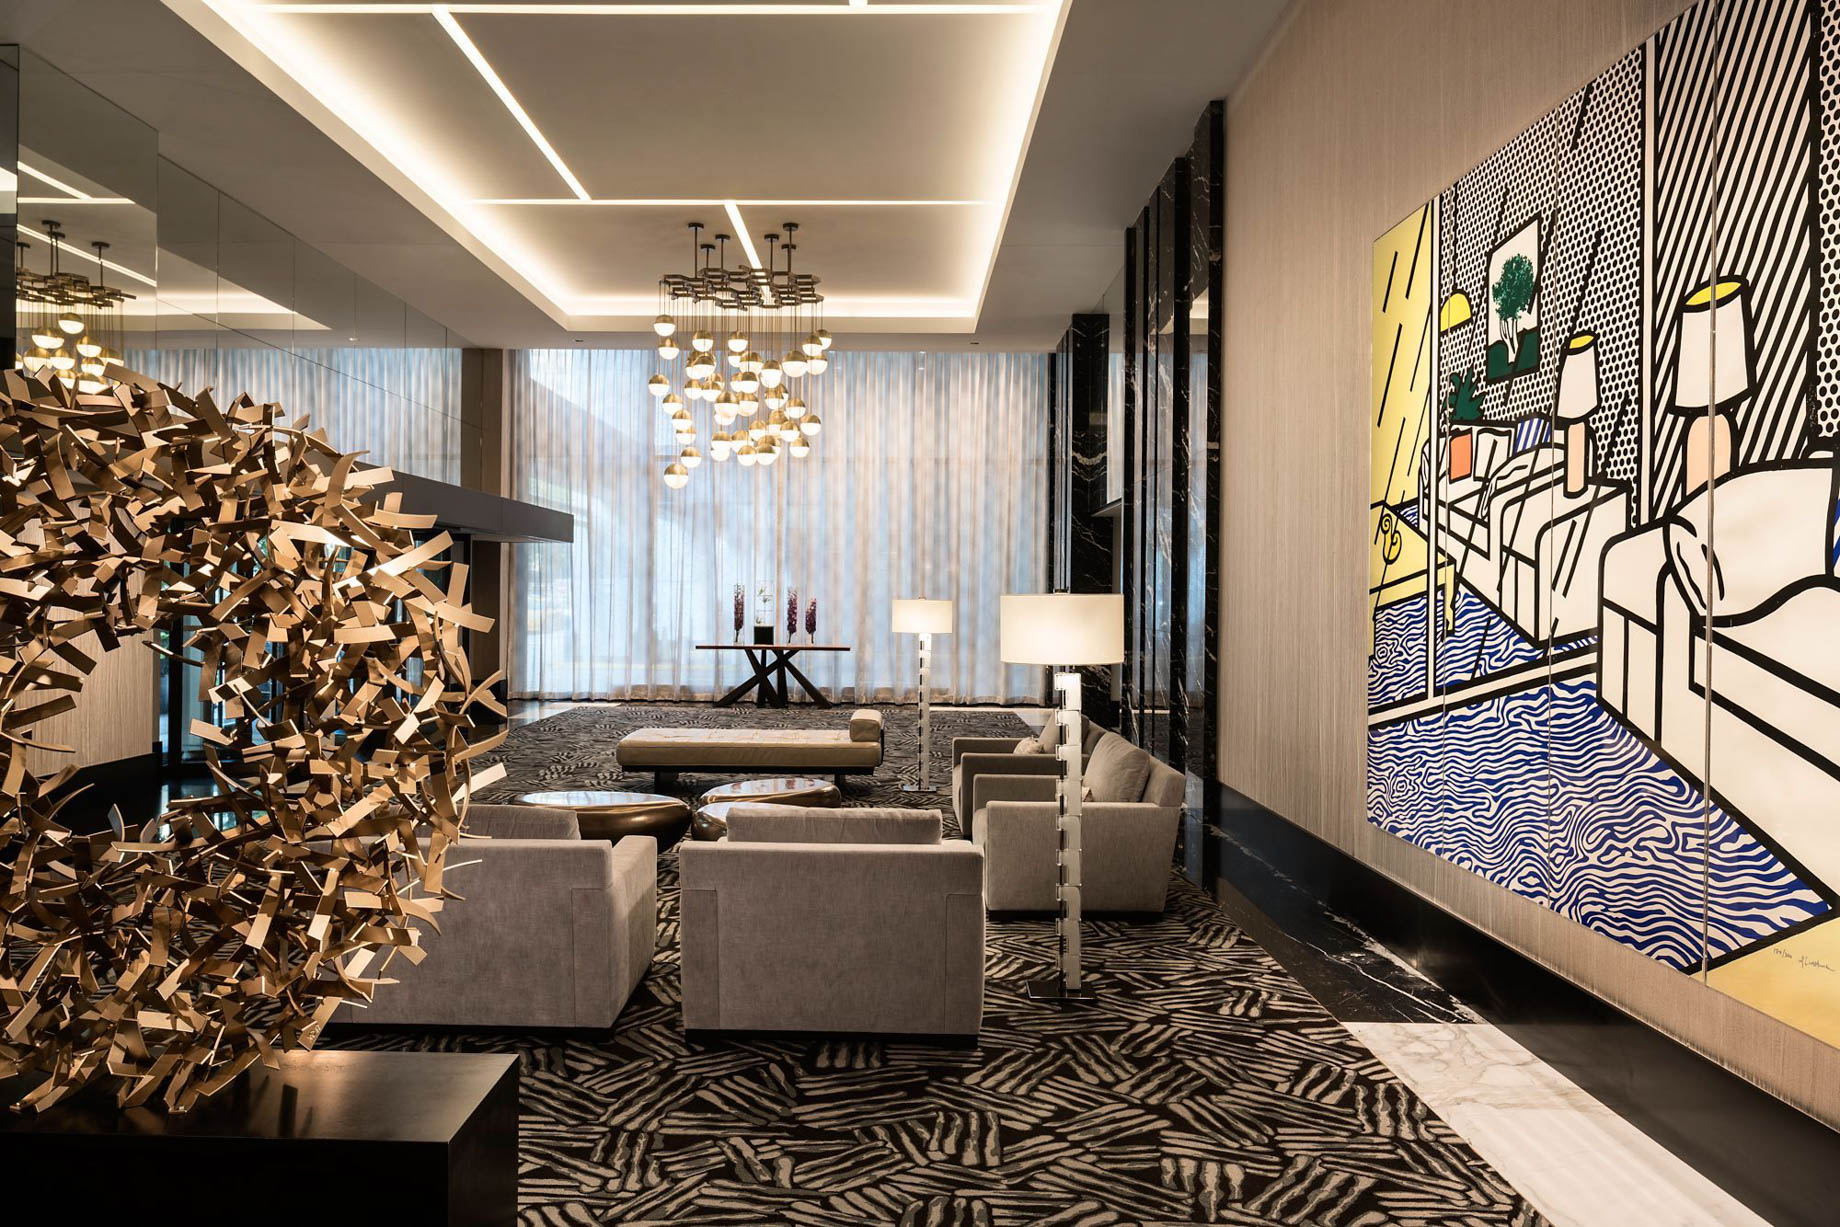 The Ritz-Carlton, Chicago Hotel – Chicago, IL, USA – Lower Lobby Wall Art by Roy Lichtenstein